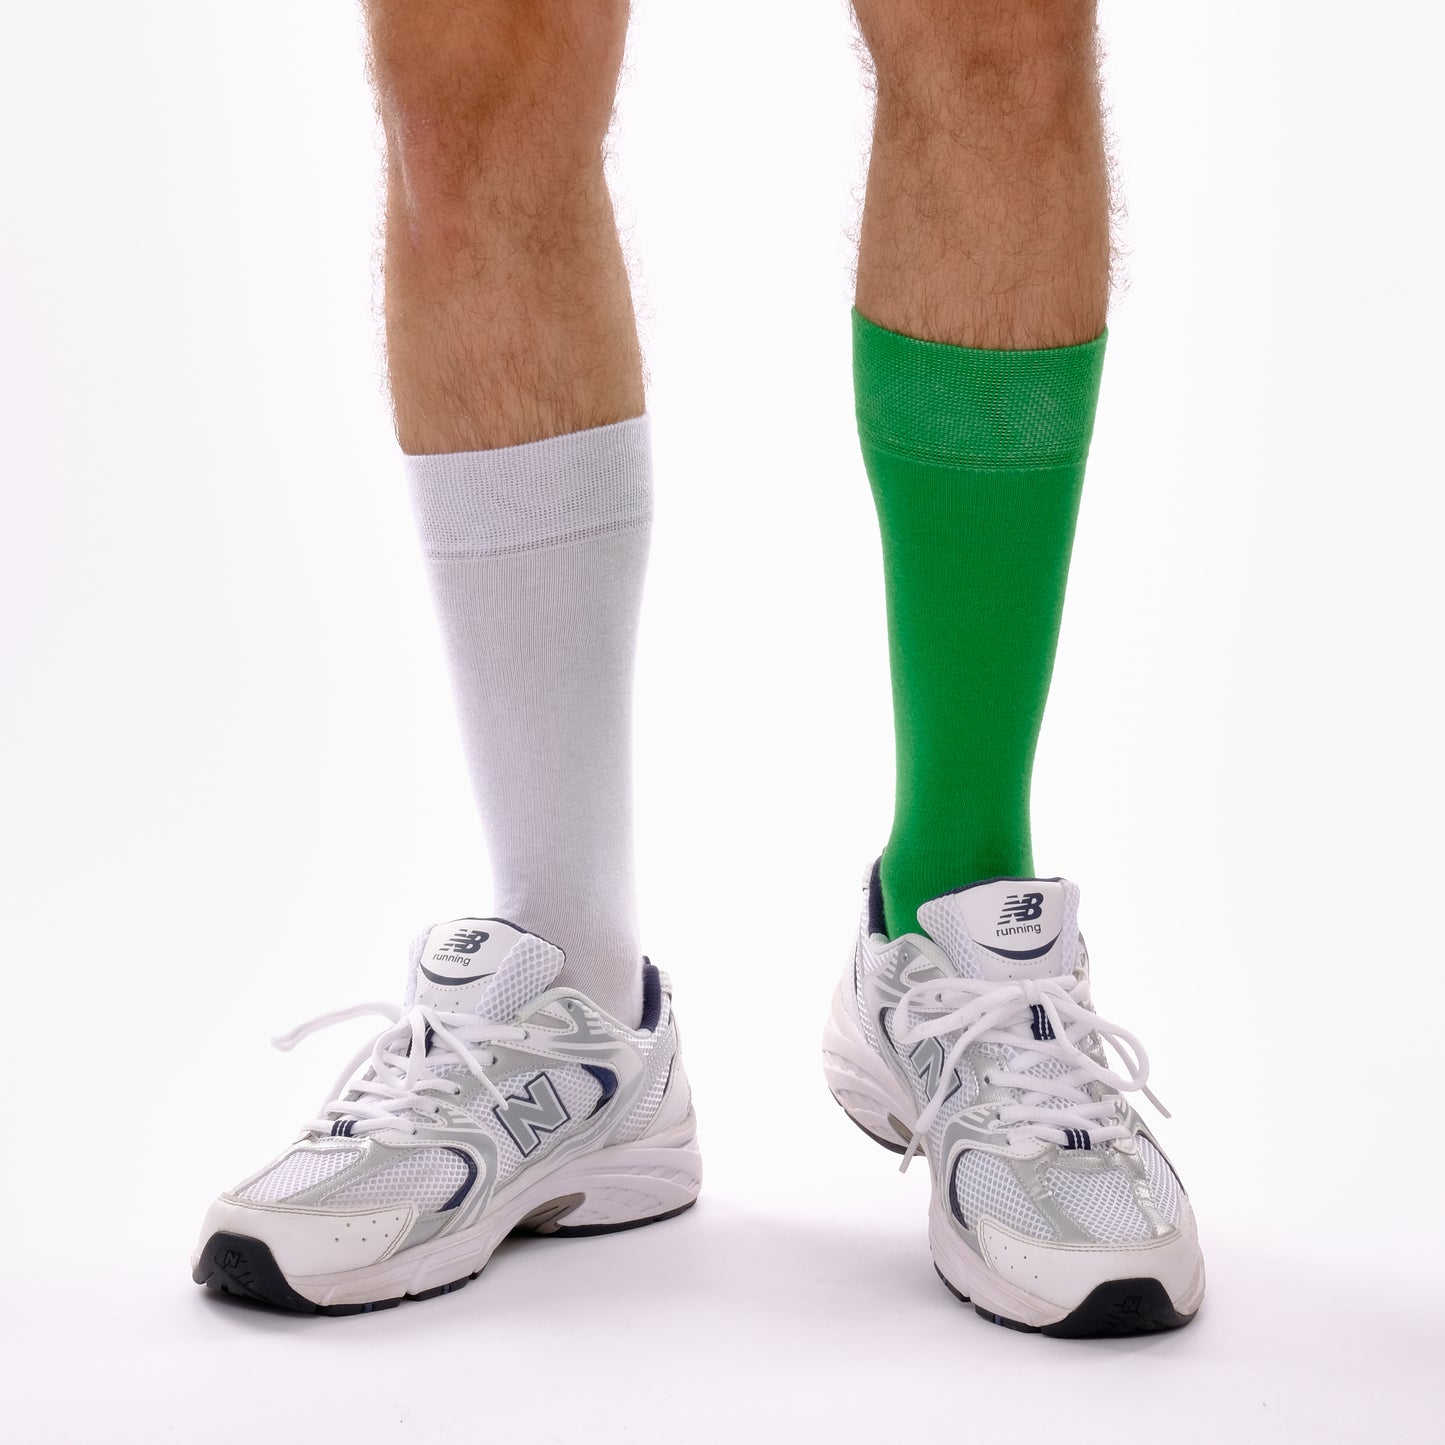 Green & Off White Odd Socks